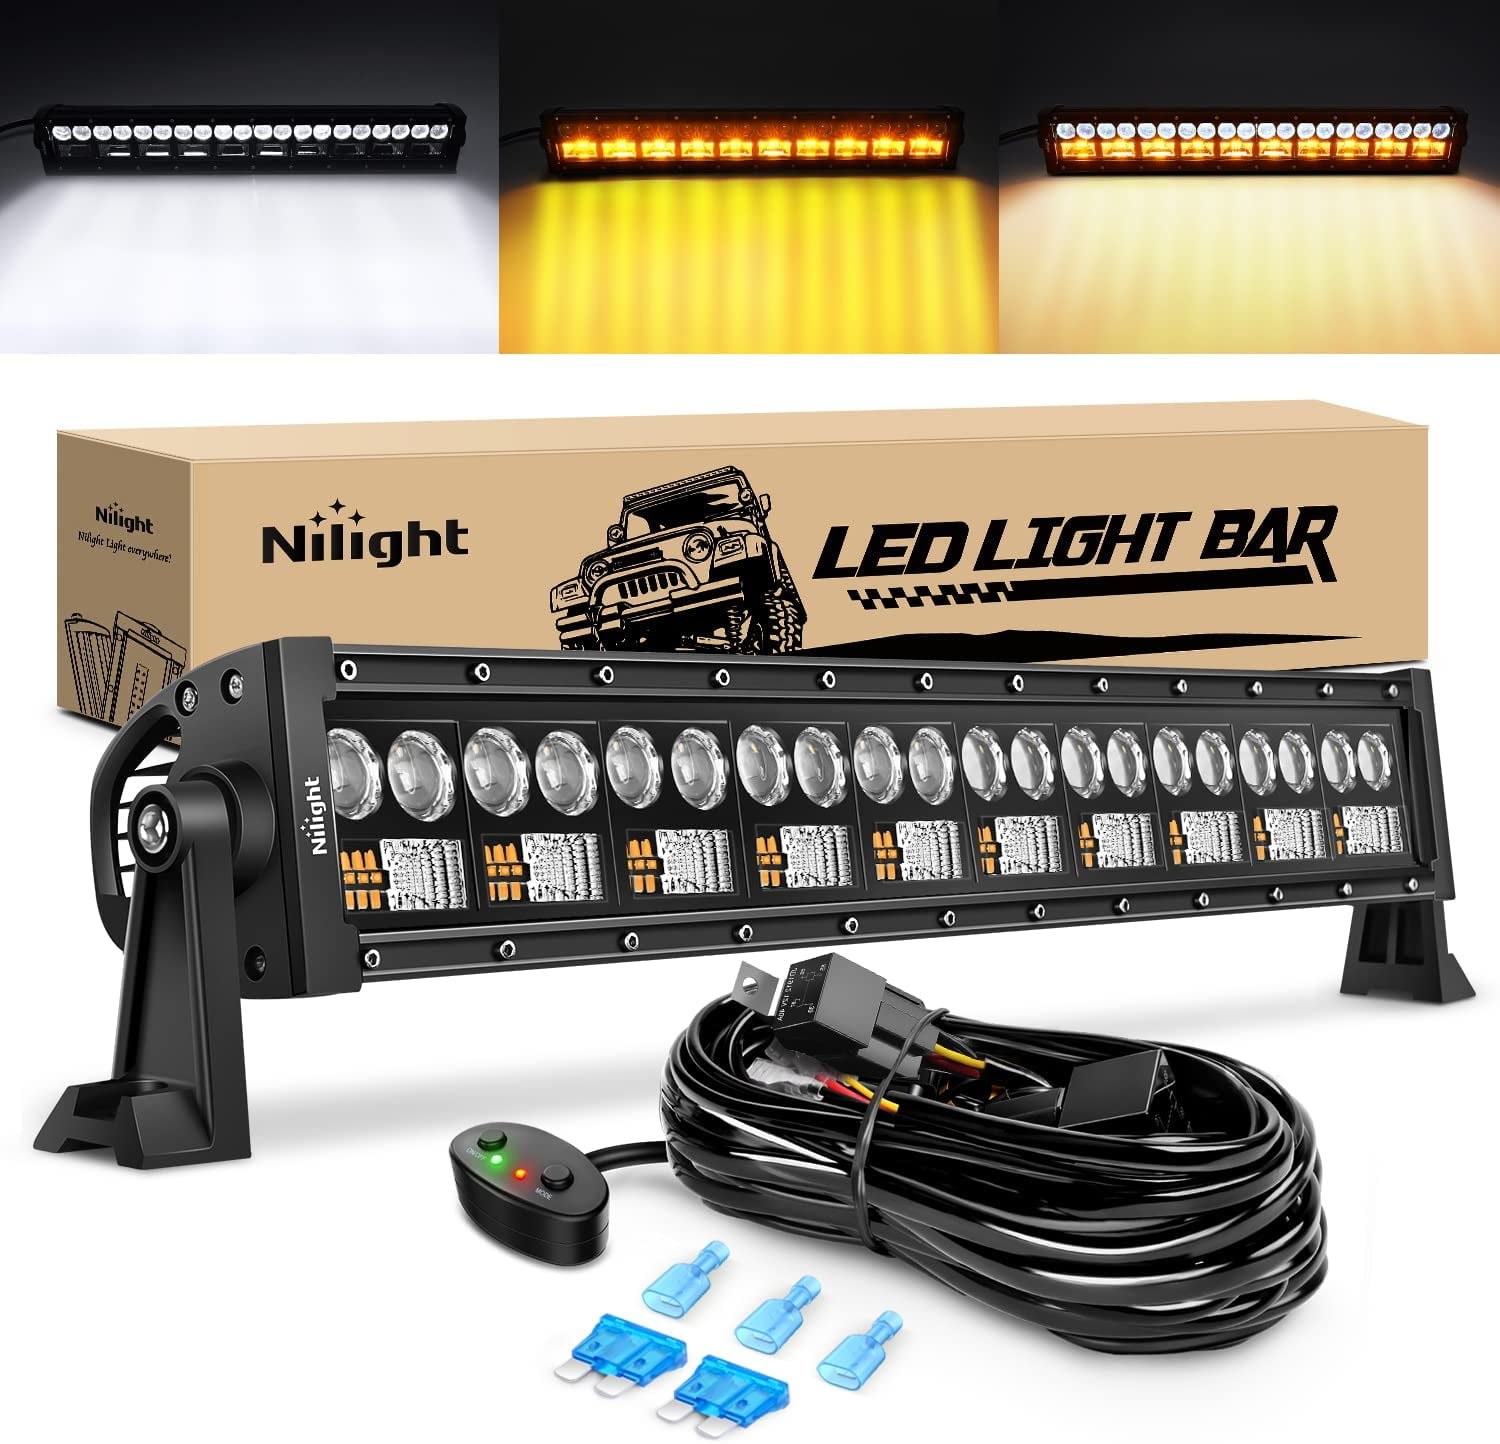  LITE-WAY 12 Inch LED Light Bar for Truck, Boat, ATV